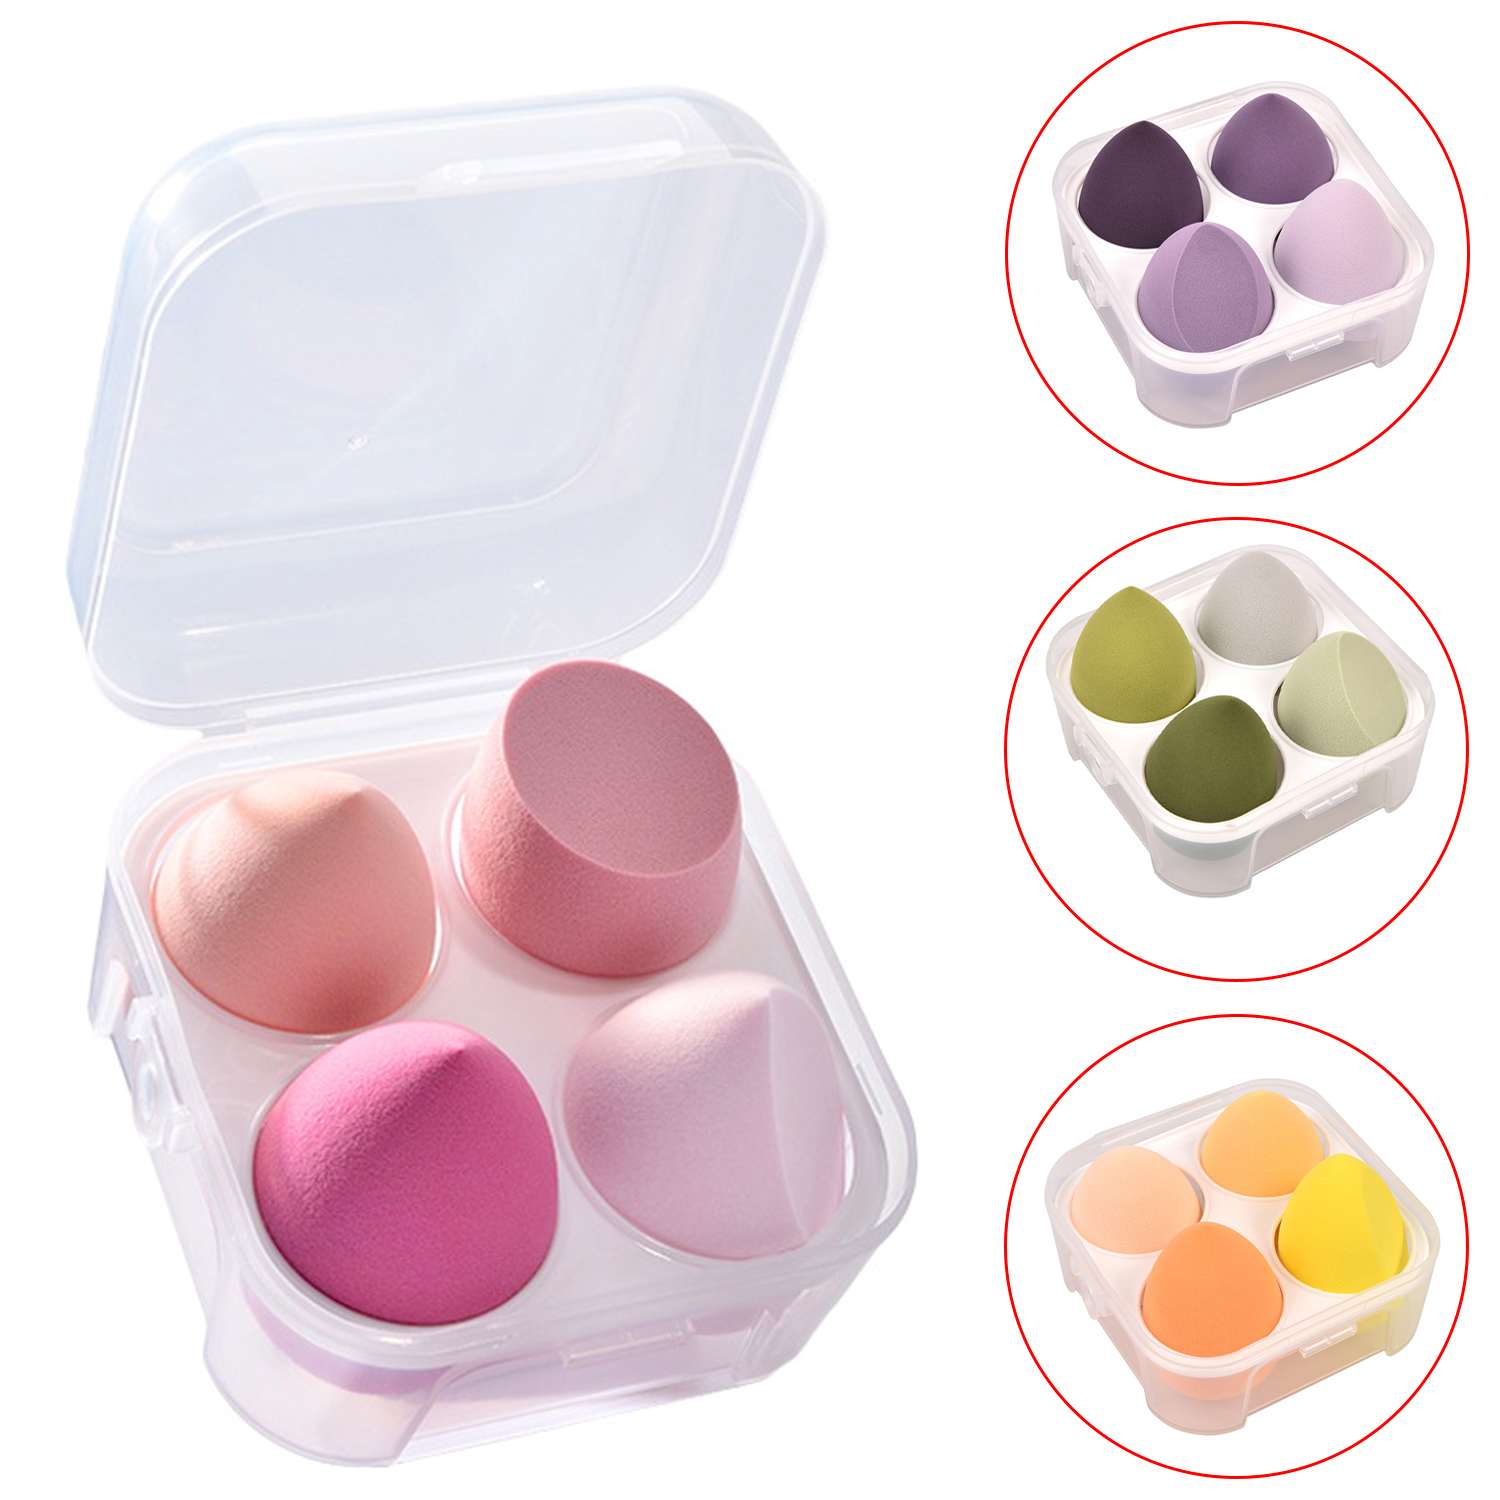 Venta al por mayor de esponjas de belleza con caja de huevos, base Facial de belleza, juego de licuadora de esponja de maquillaje facial 